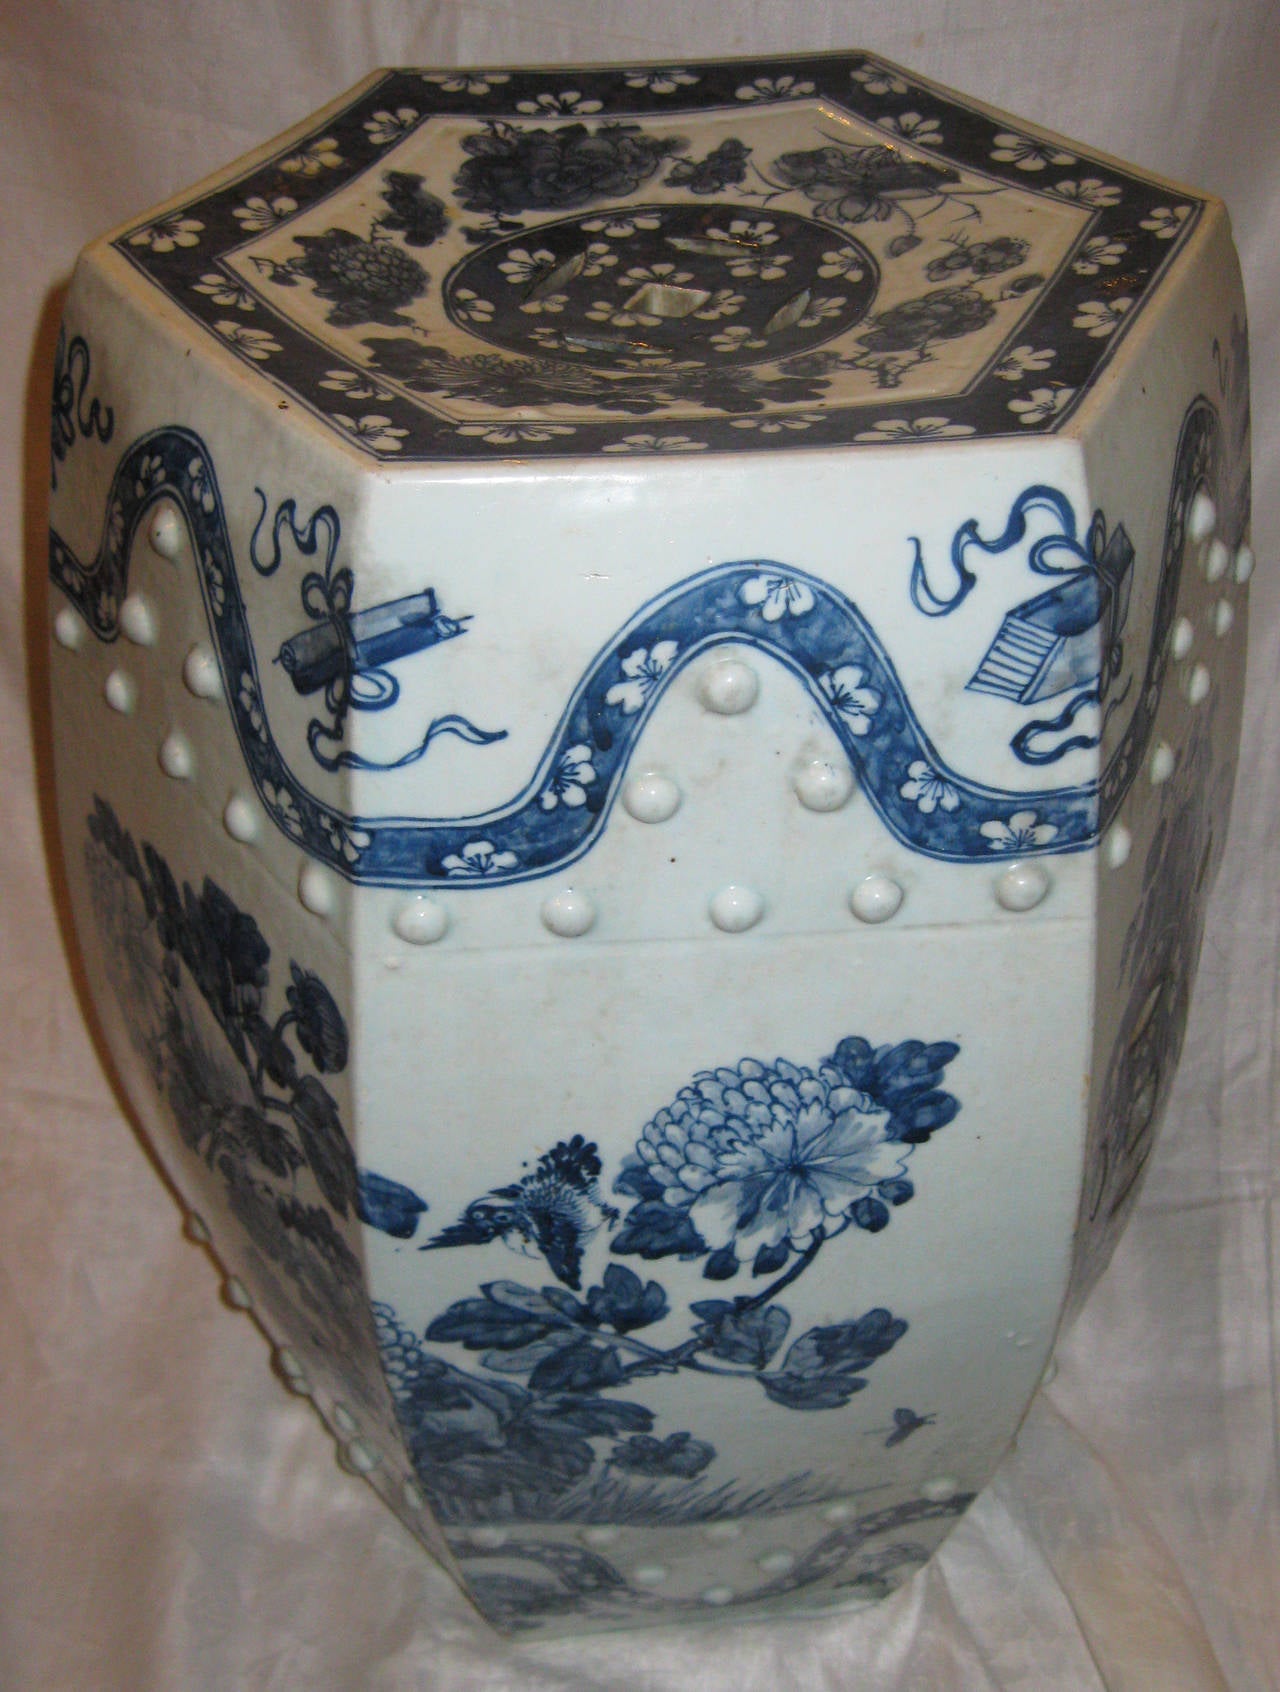 Siège de jardin de forme hexagonale en porcelaine bleue et blanche émaillée de style Nankin. Les caractéristiques comprennent un sommet et des côtés percés, des points moulés en relief et une exécution très raffinée de motifs floraux, d'un grand